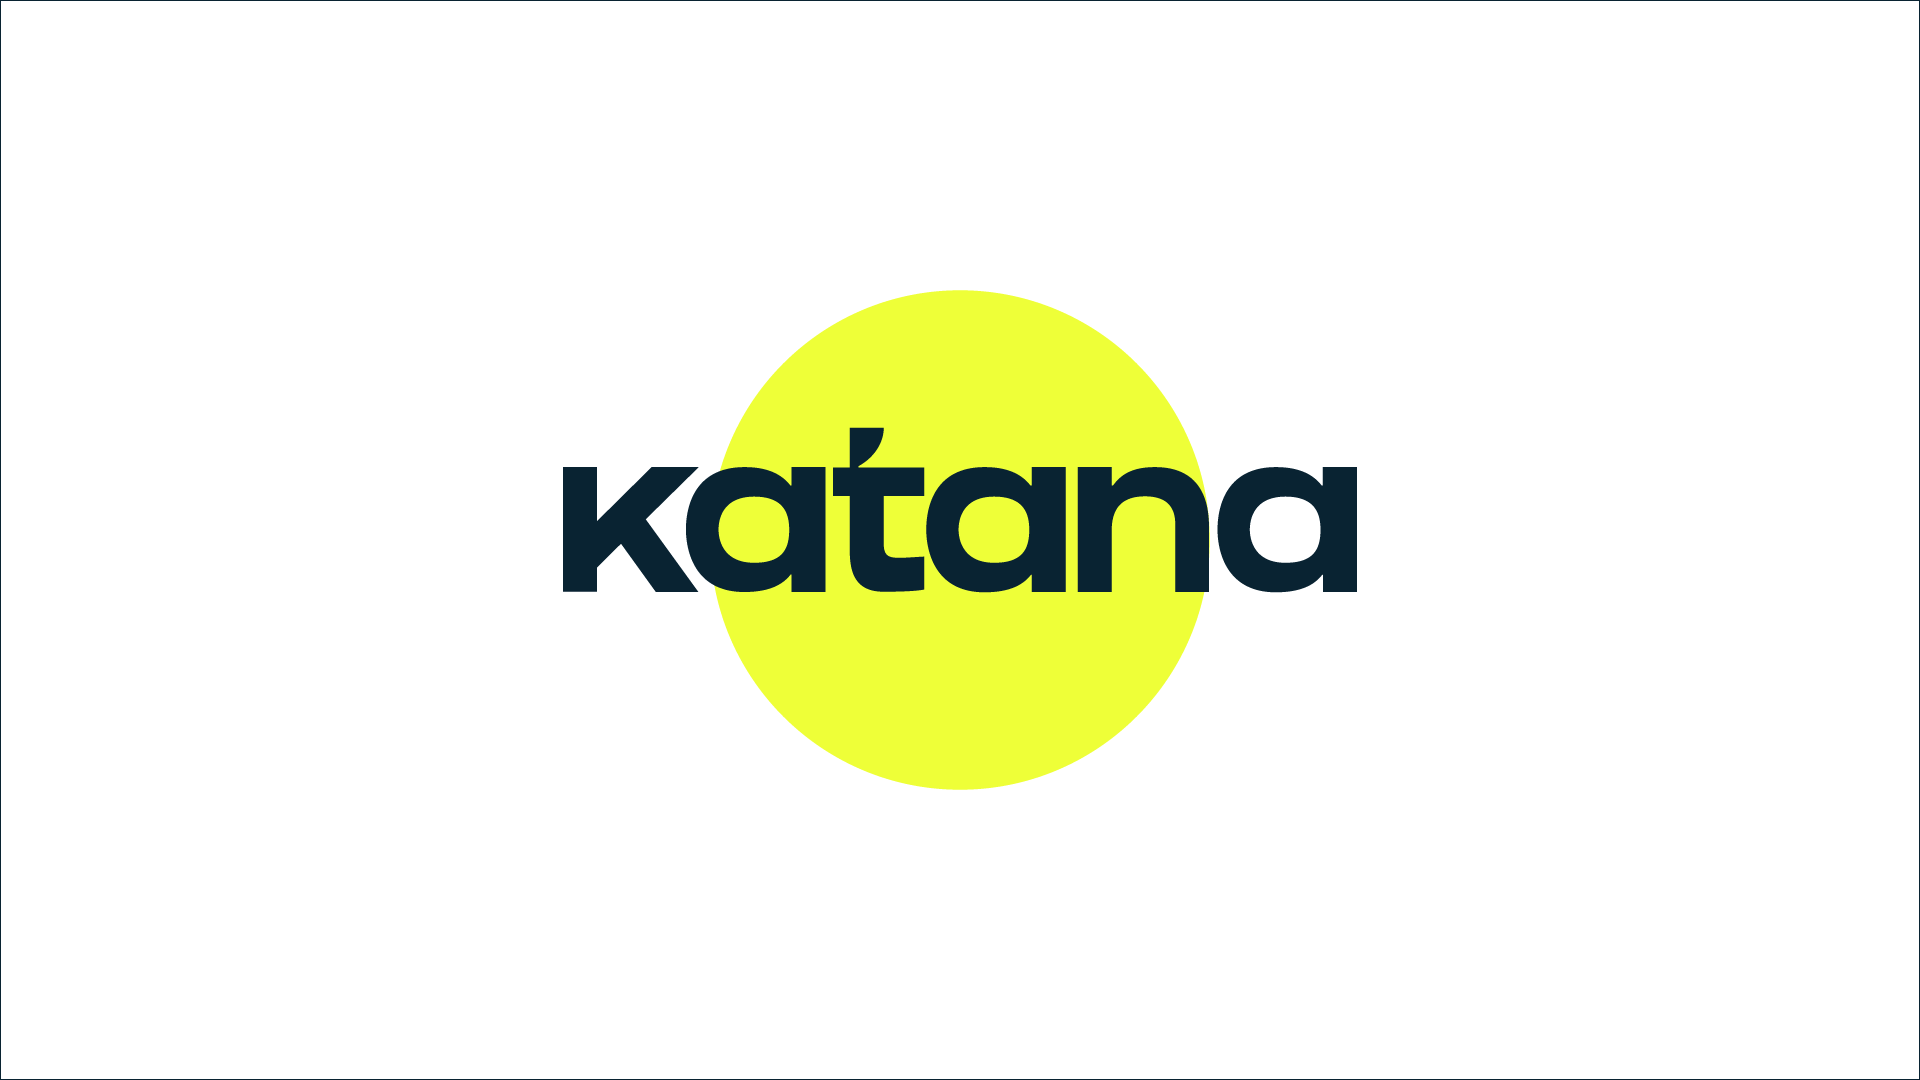 Katana logo with circle of the sun